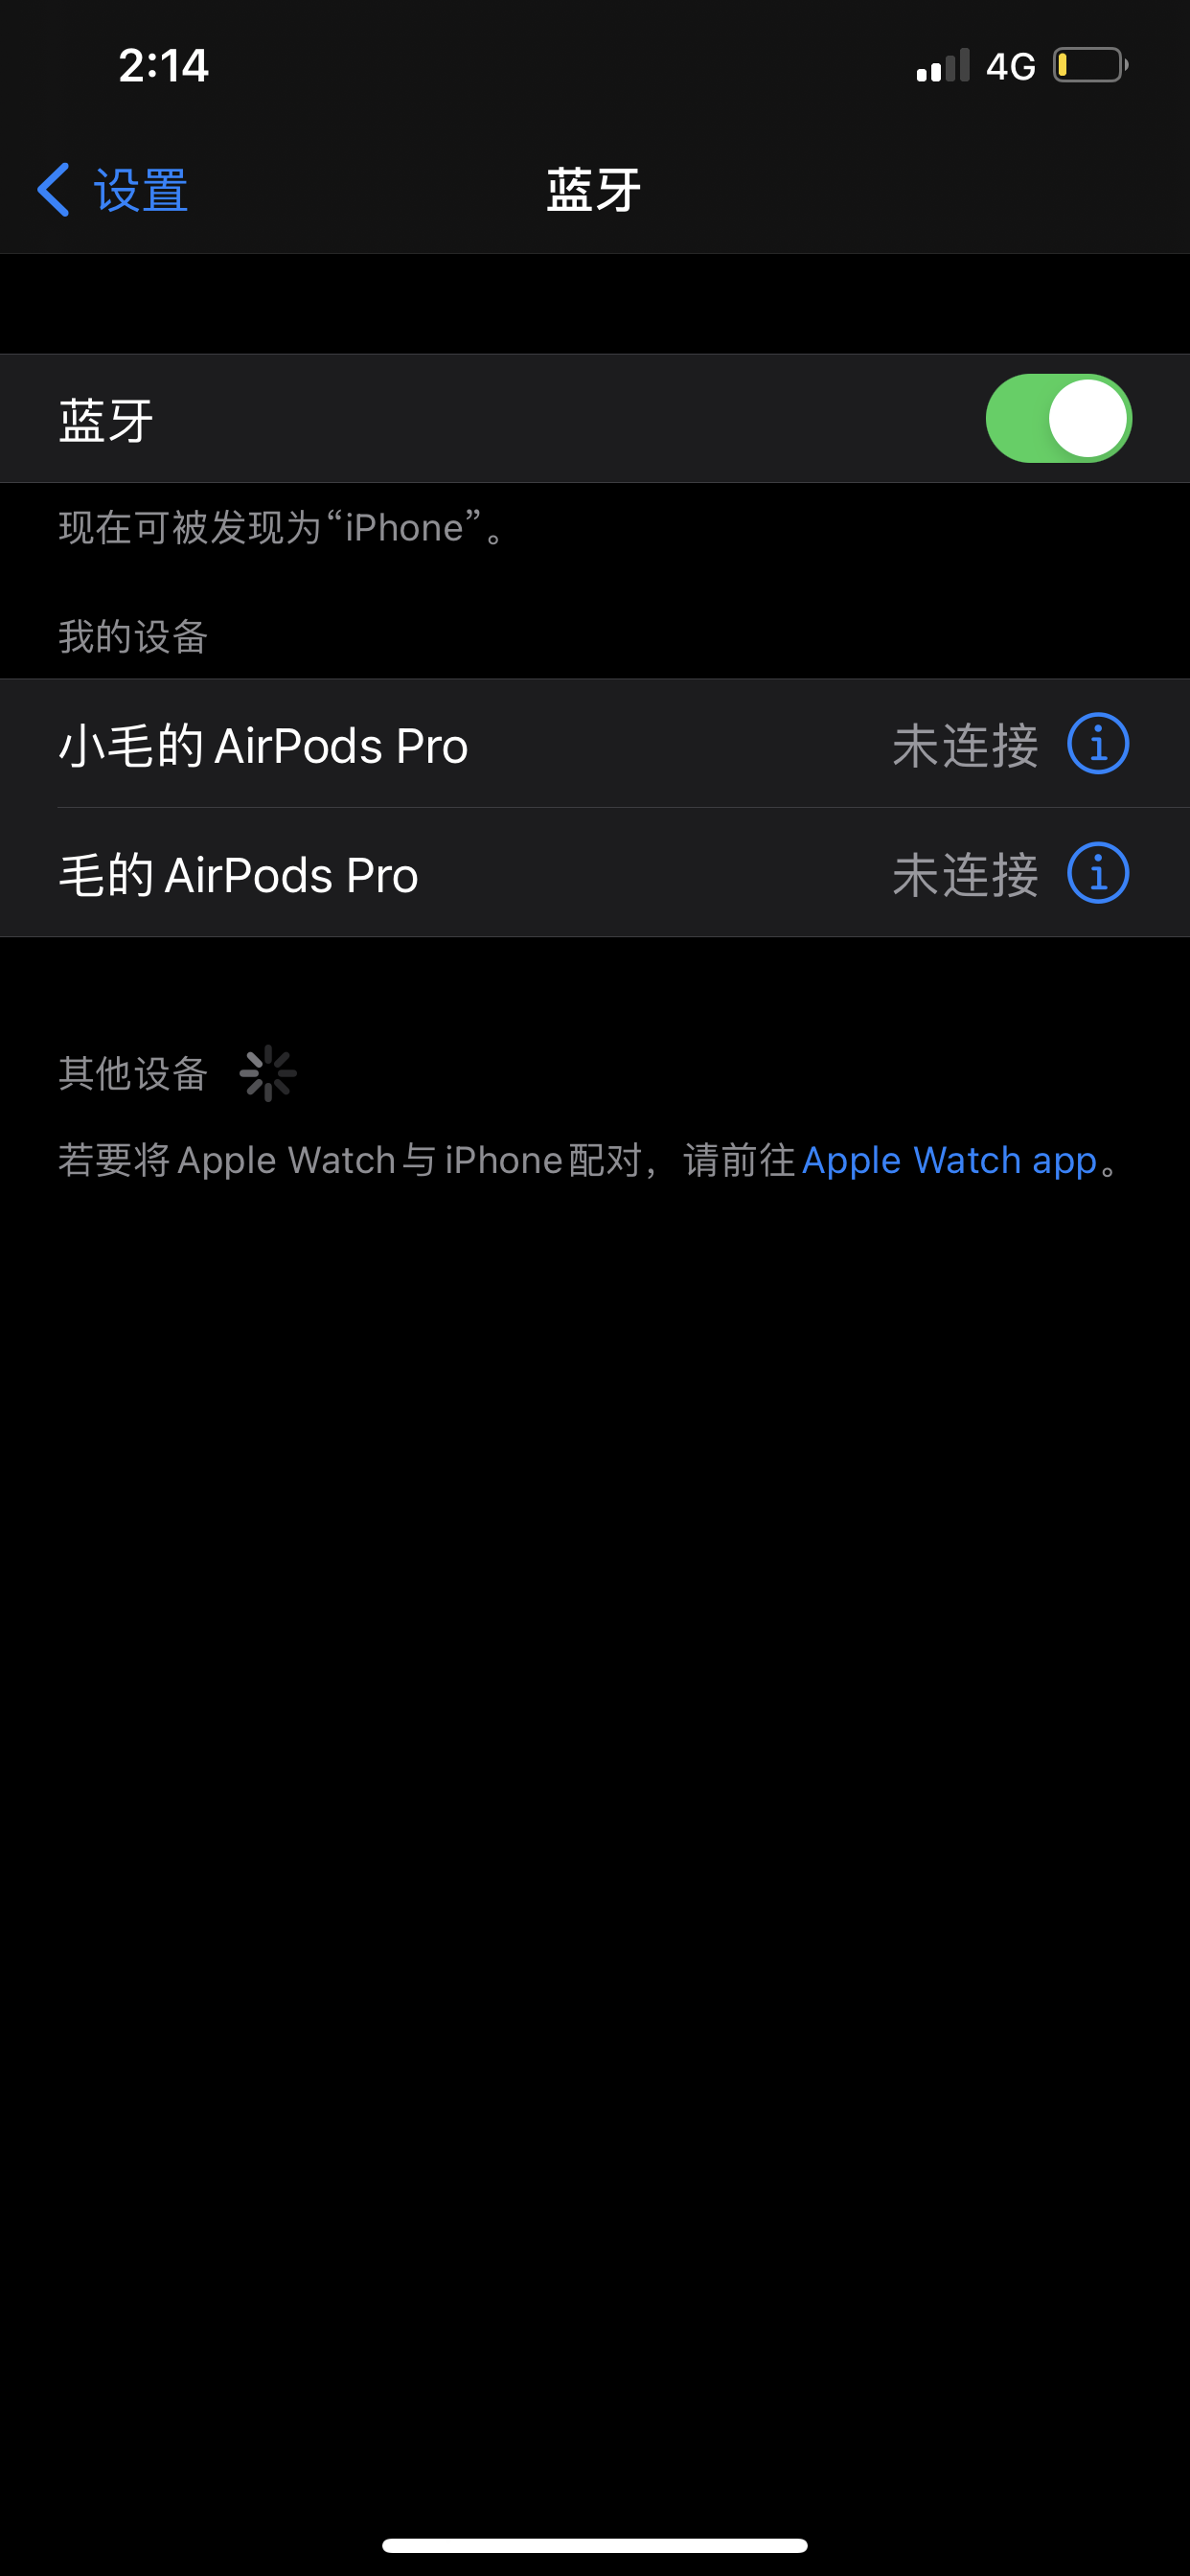 AirPods pro 耳机左右没办法同时工作… - Apple 社区